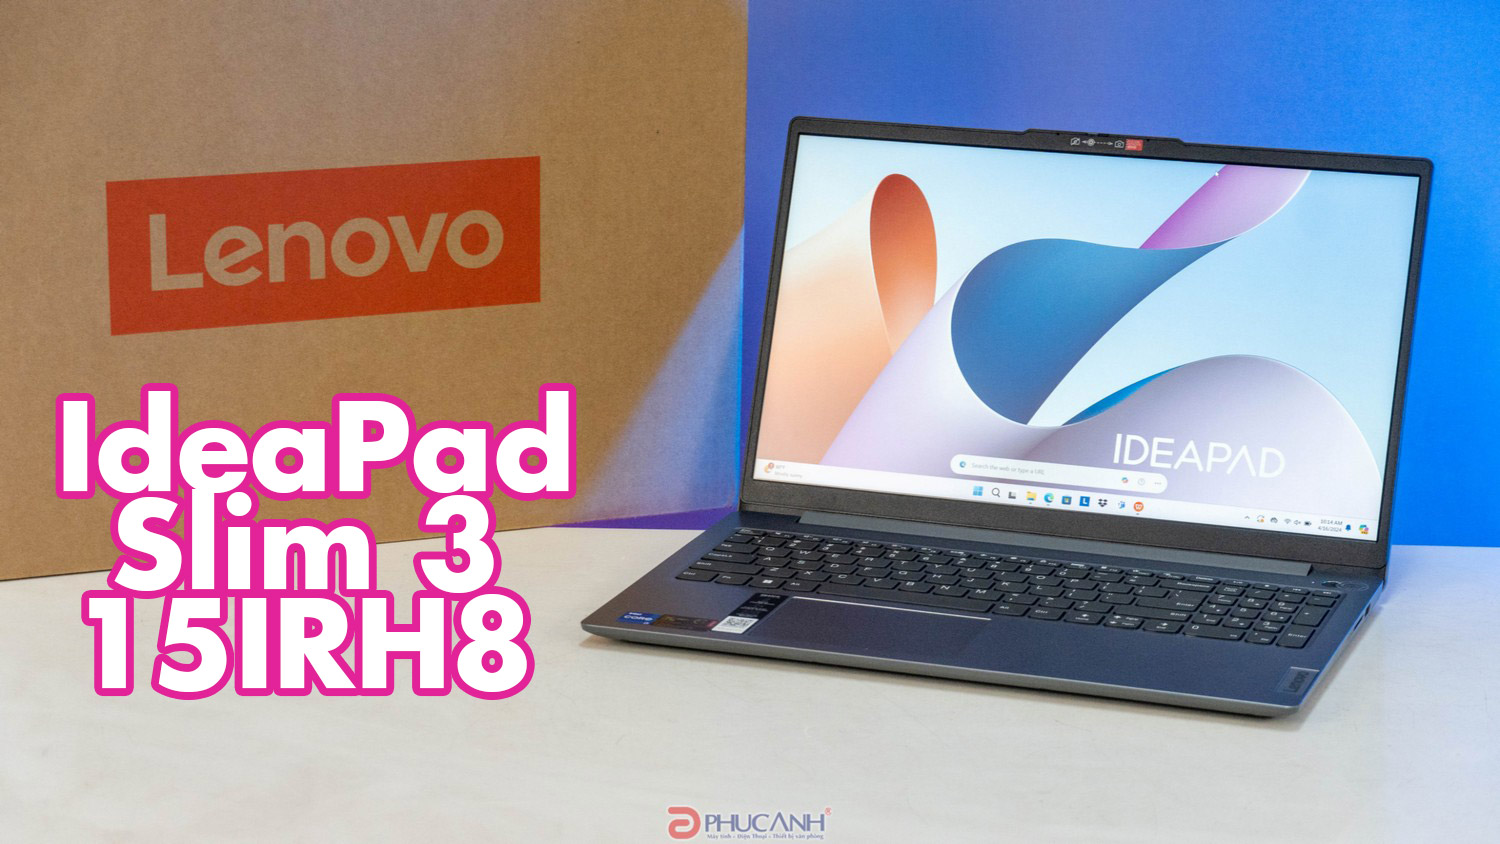 Đánh giá Lenovo IdeaPad Slim 3 15IRH8 - Mỏng nhẹ, giá thành tốt với vi xử lý Intel Core i7 thế hệ 13